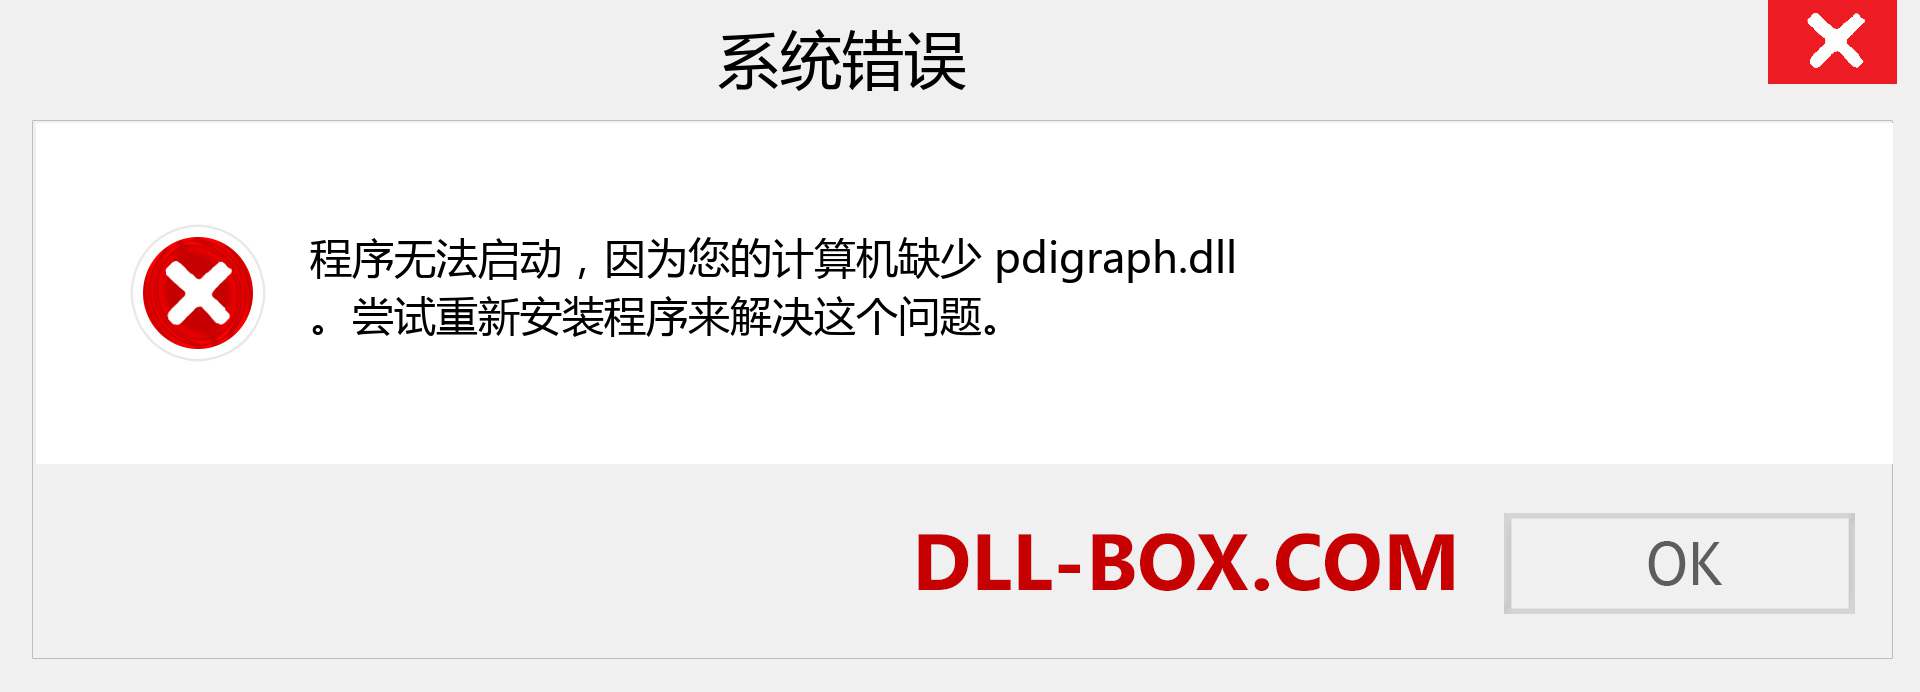 pdigraph.dll 文件丢失？。 适用于 Windows 7、8、10 的下载 - 修复 Windows、照片、图像上的 pdigraph dll 丢失错误